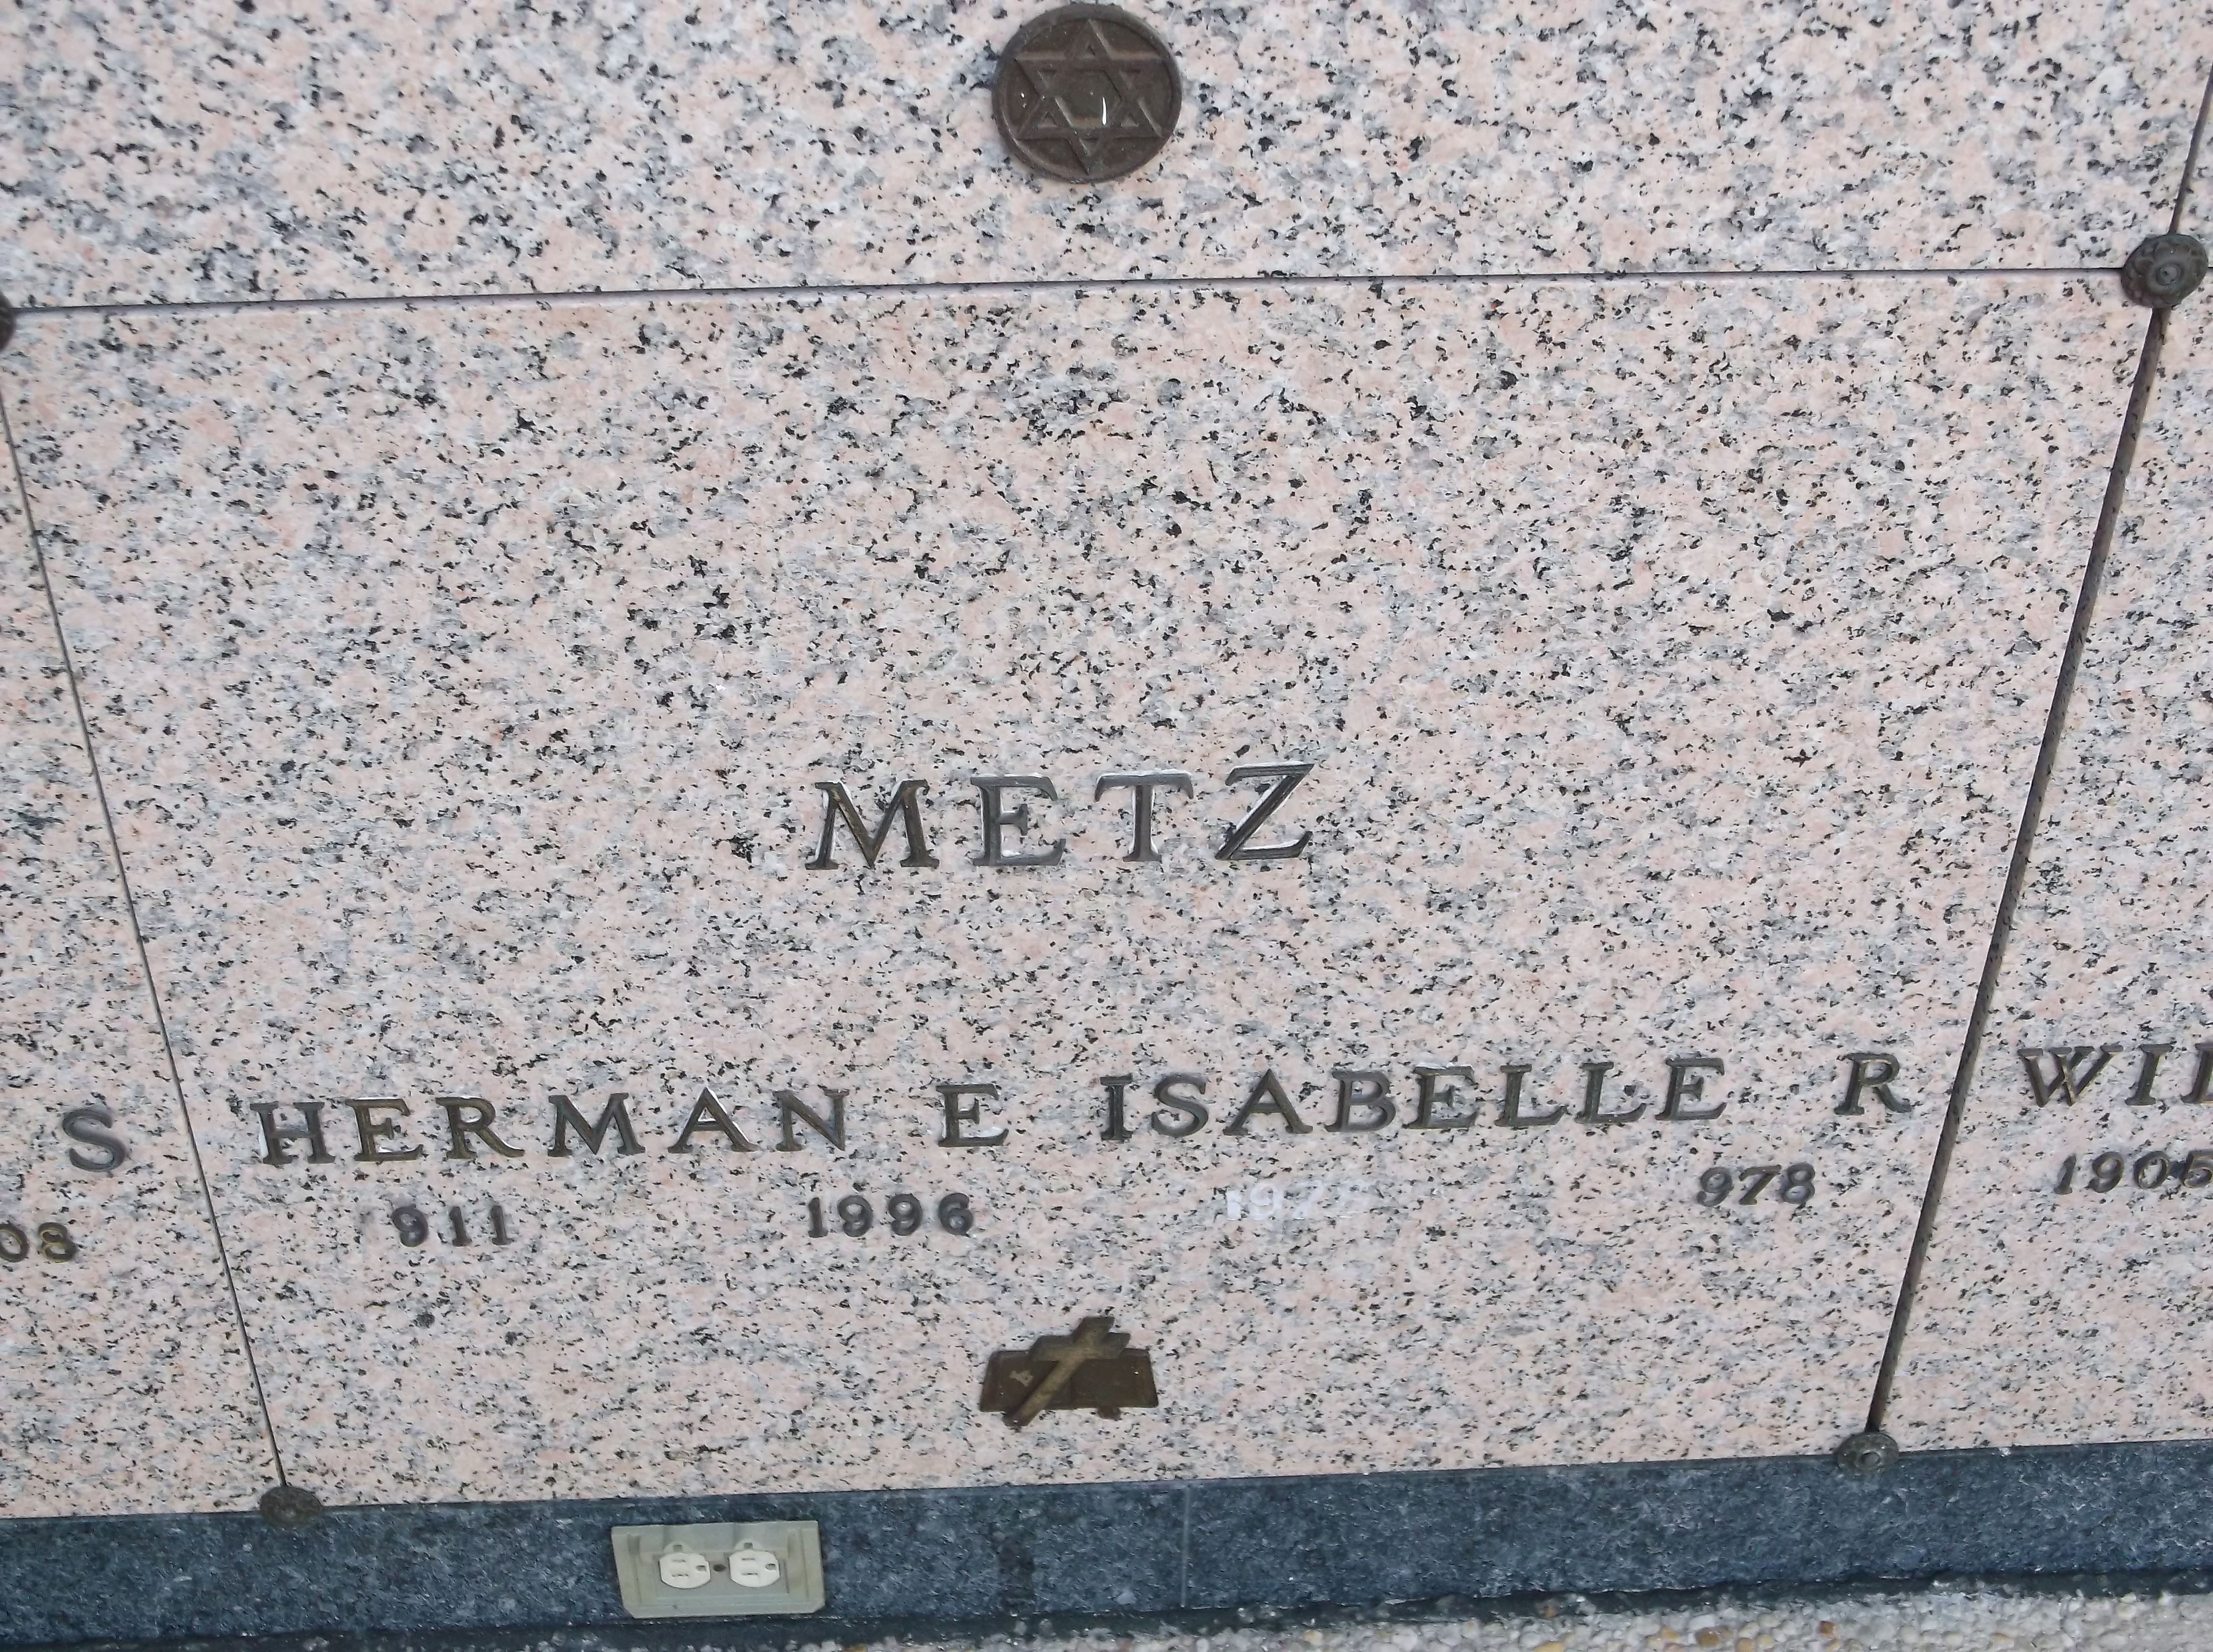 Herman E Metz